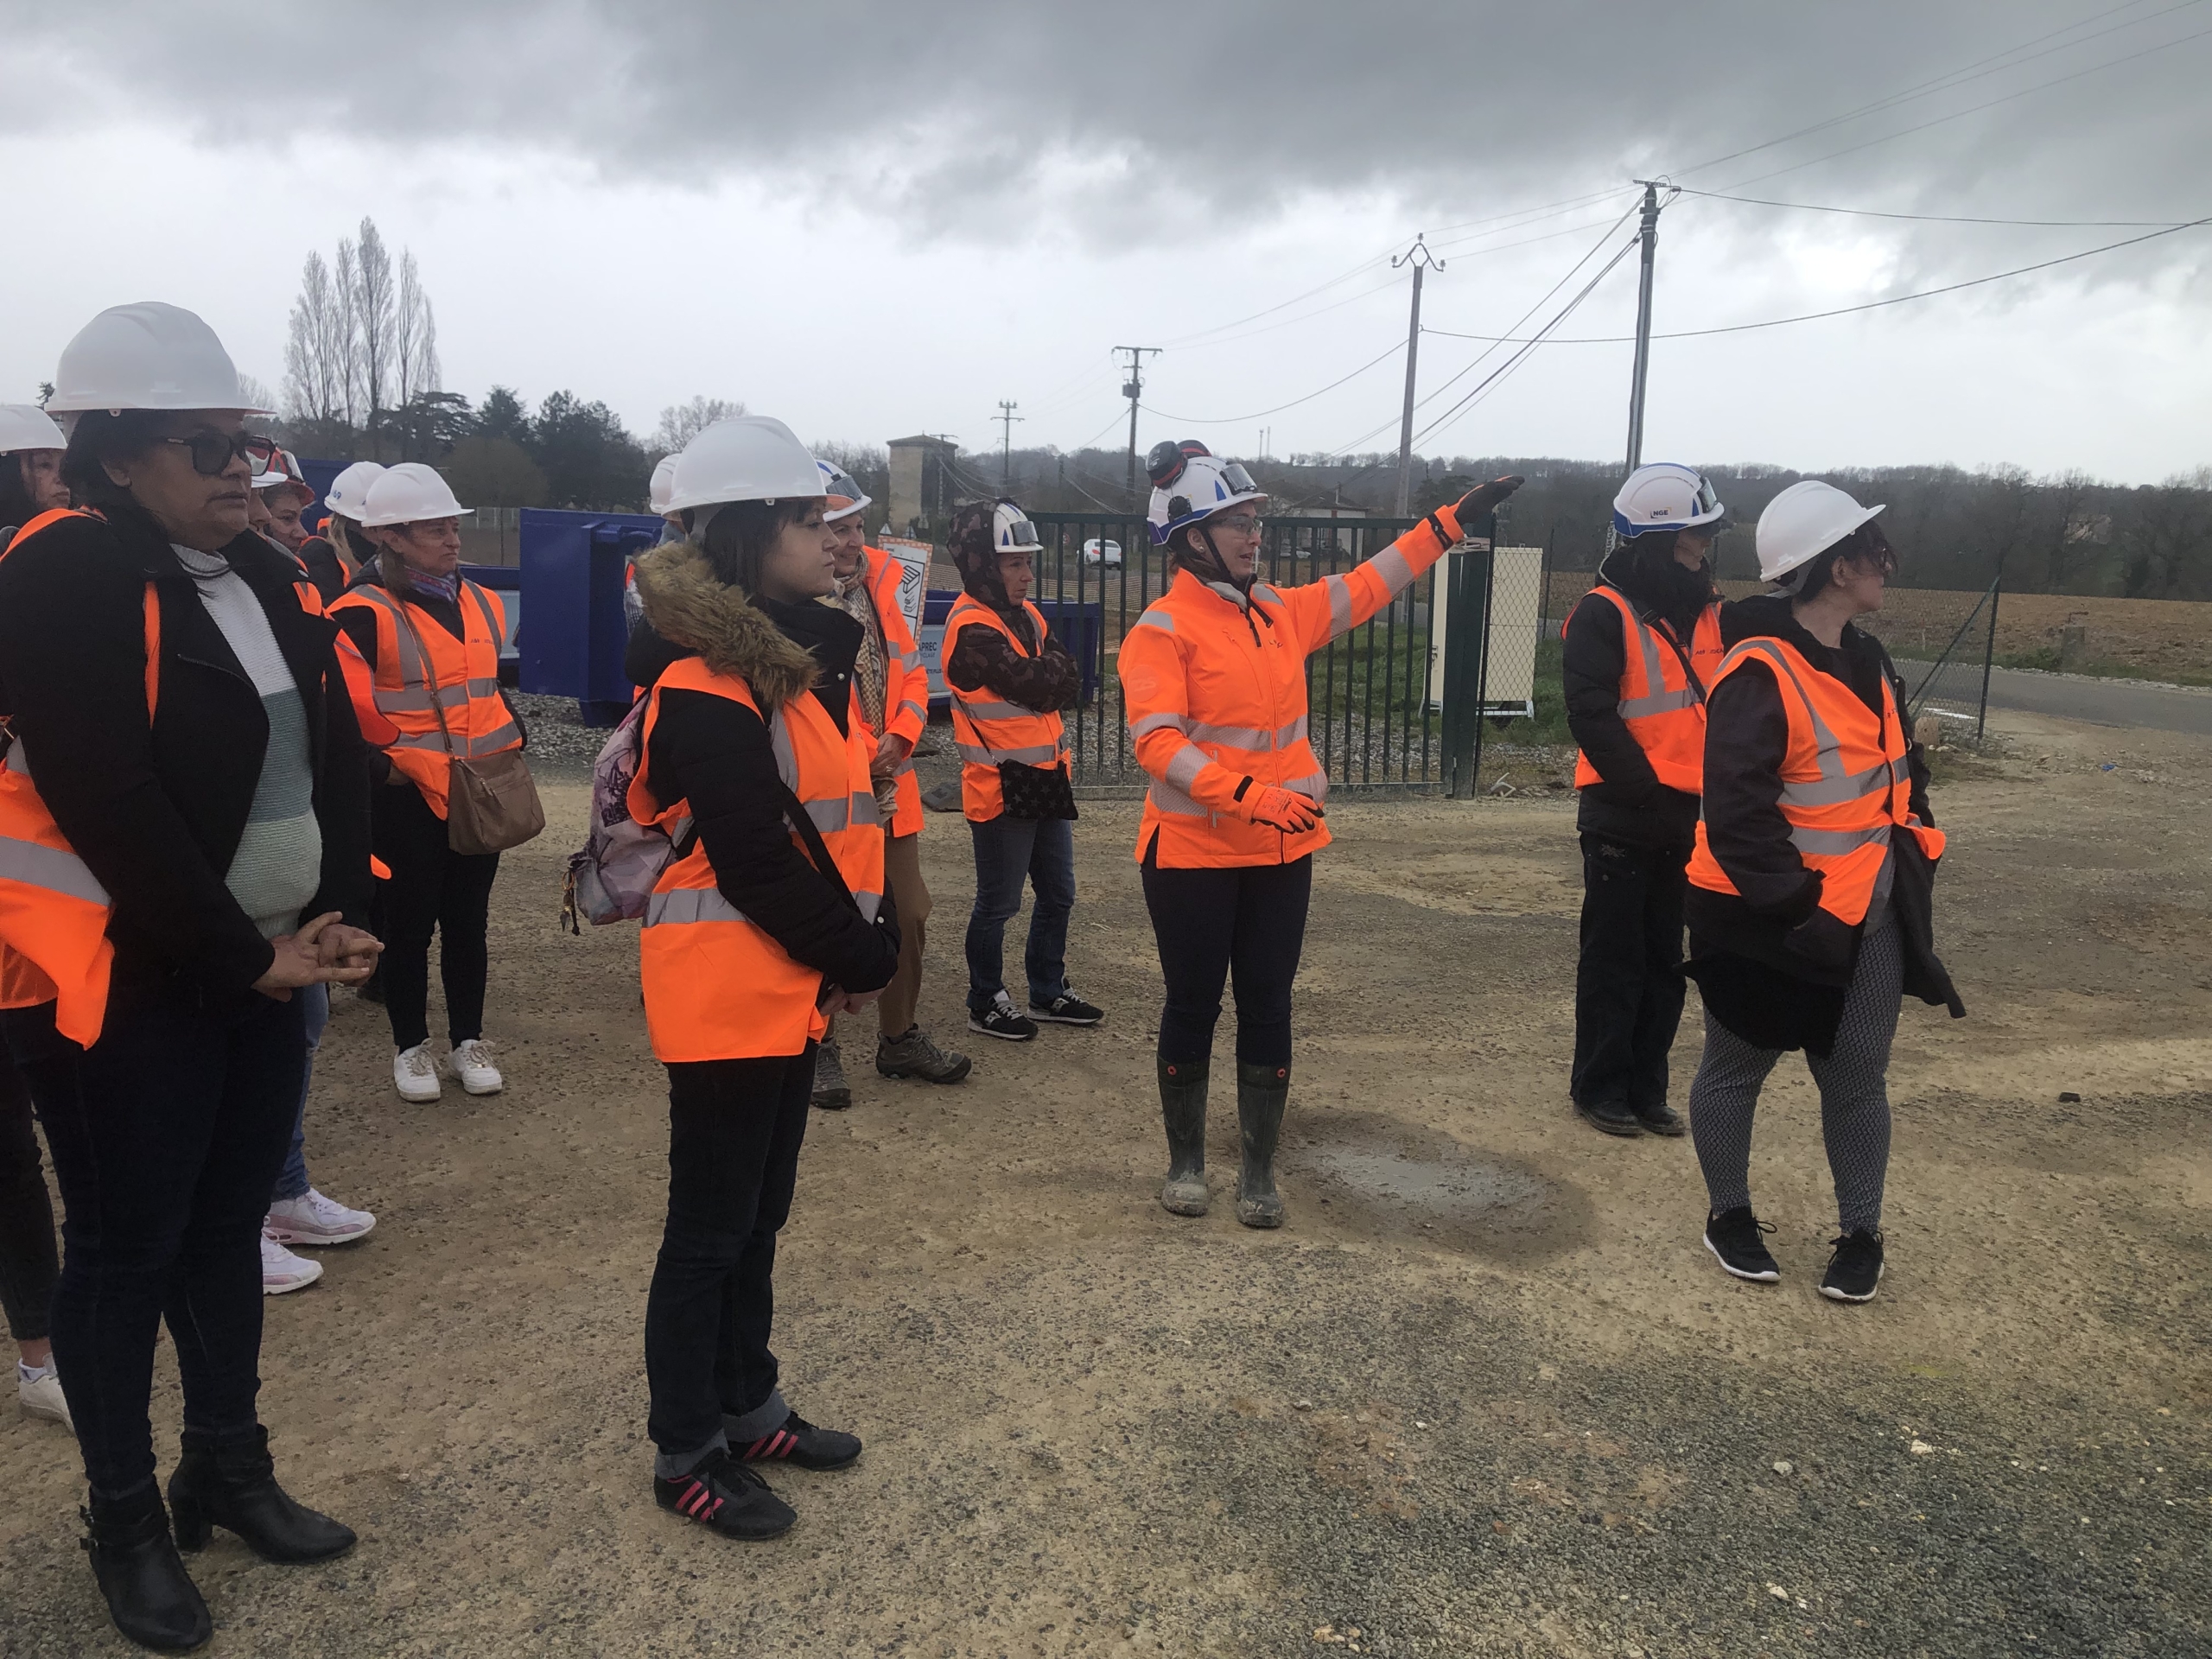 A l’occasion de la journée internationale de la Femme, le chantier ouvre ses portes à France Travail pour faire découvrir à des Tarnaises les postes à pourvoir sur l’A69